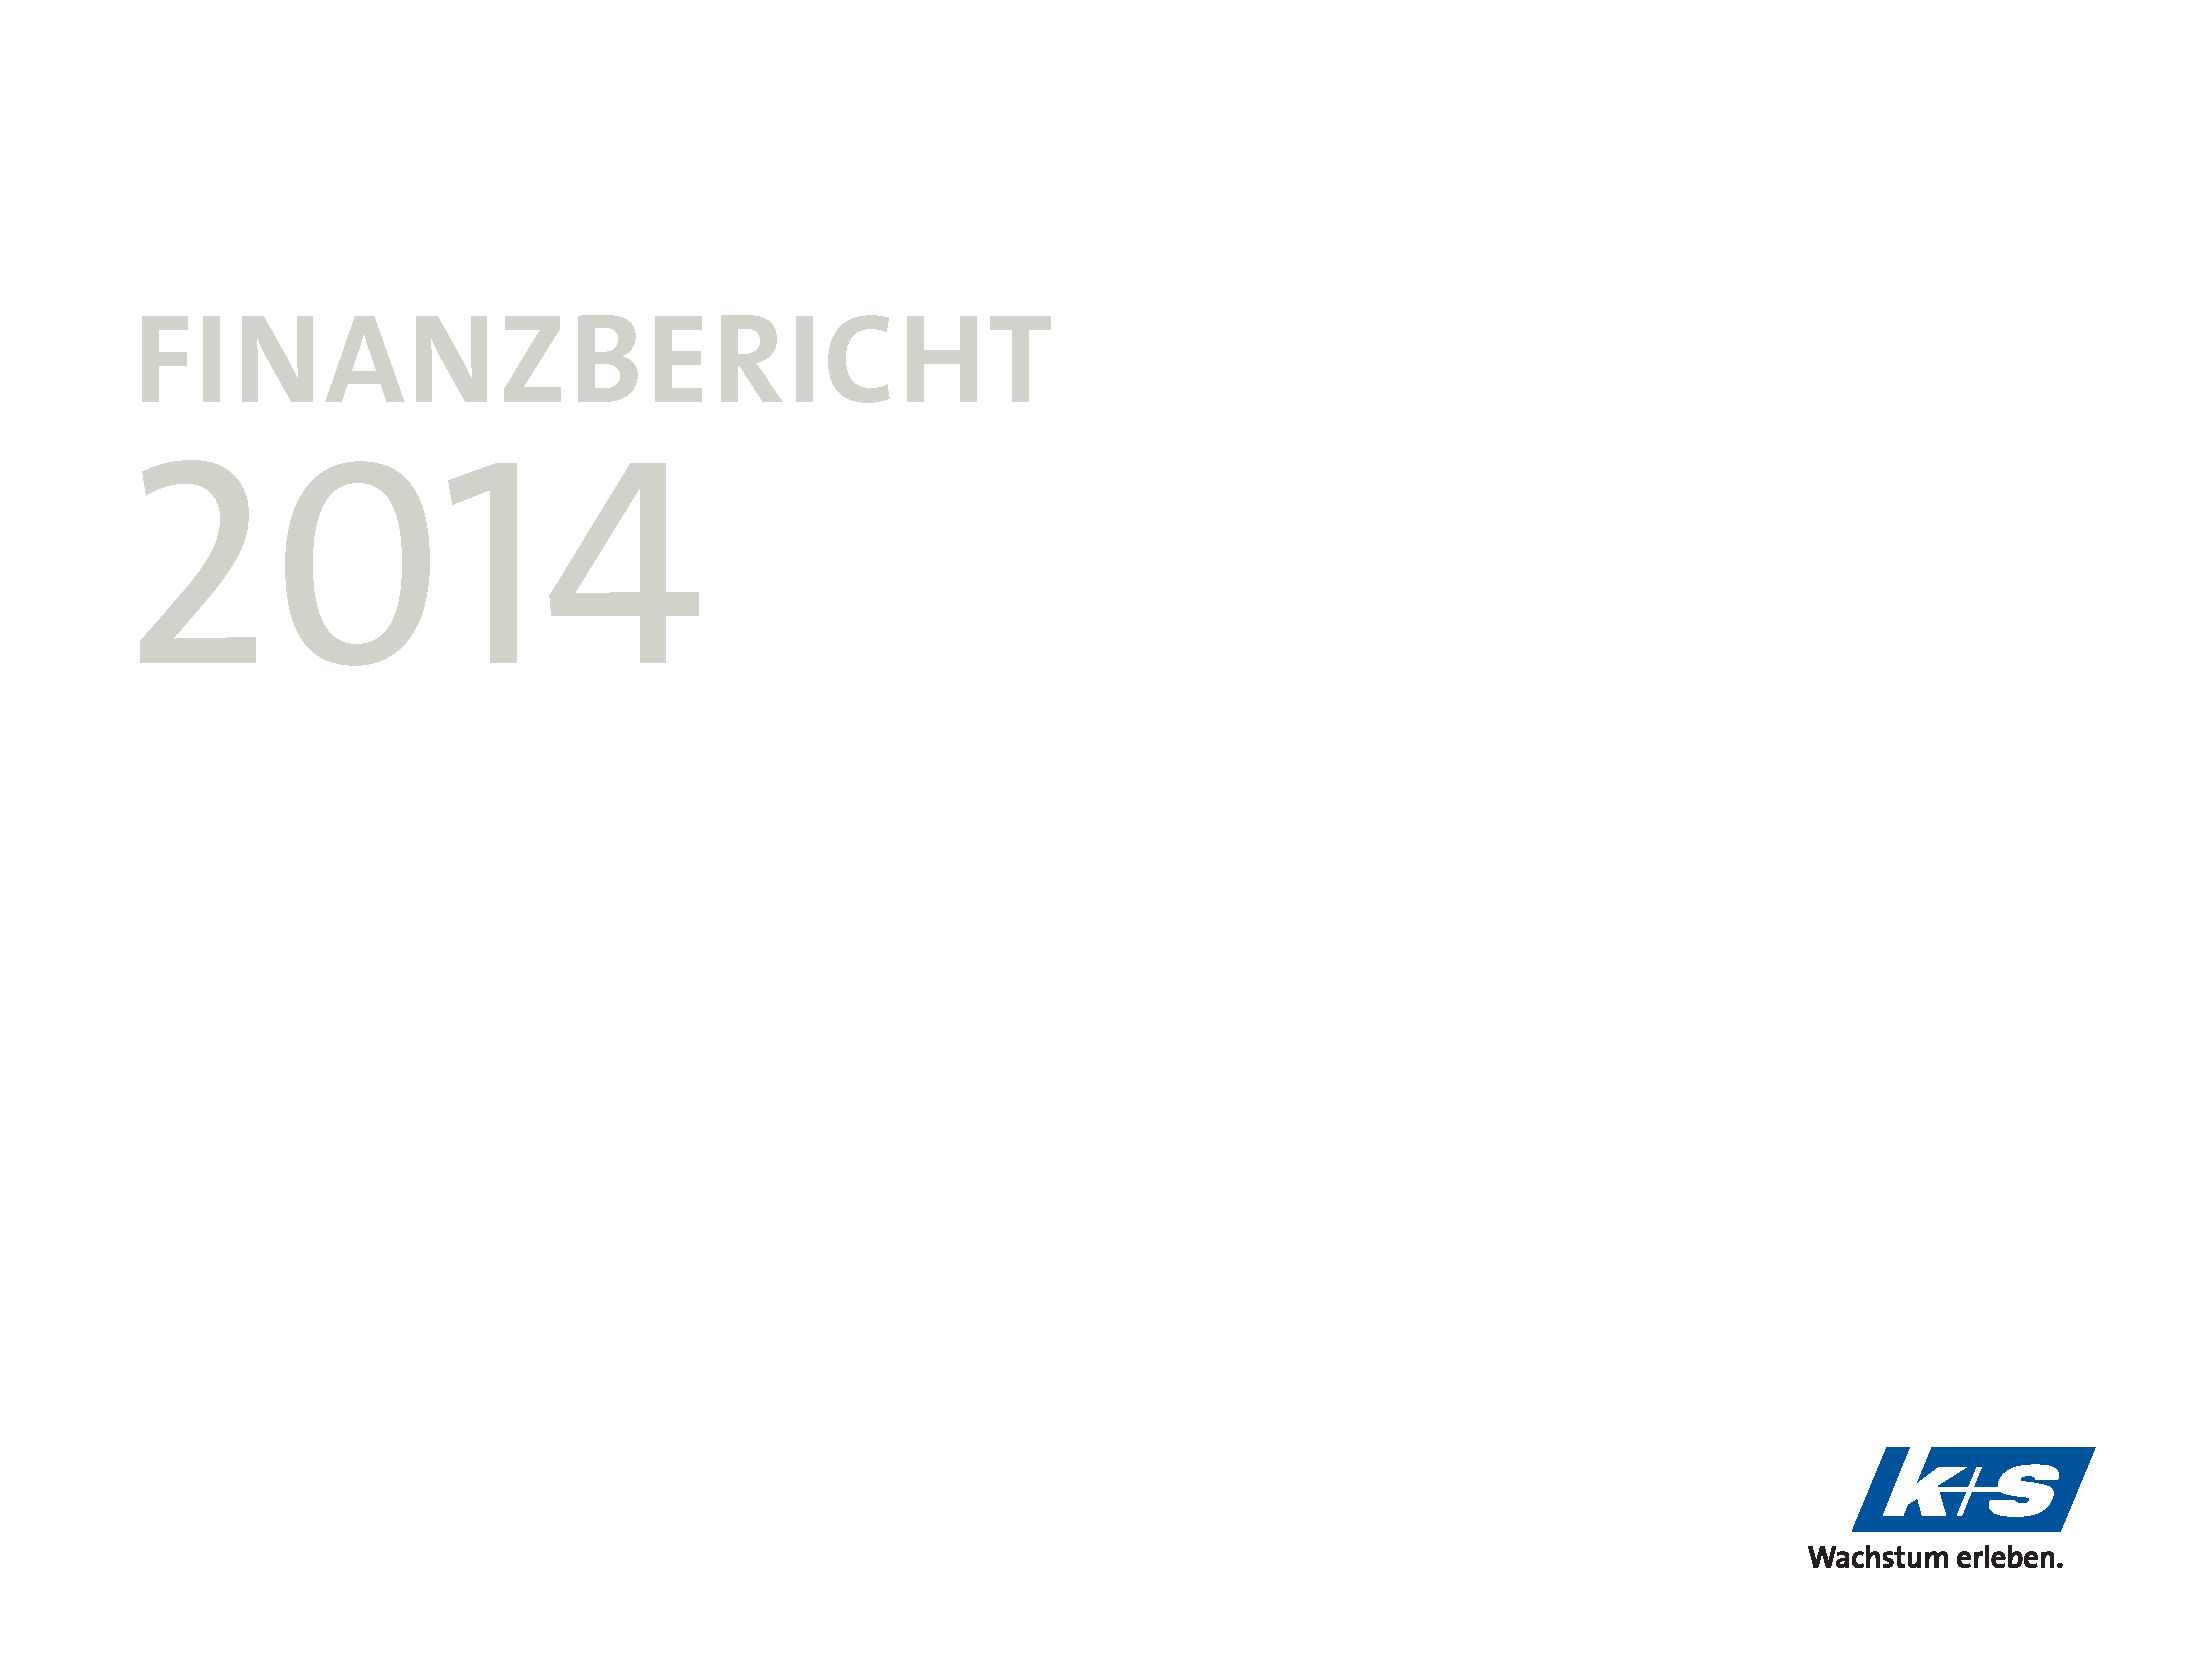 Finanzbericht 2014 (16:9)